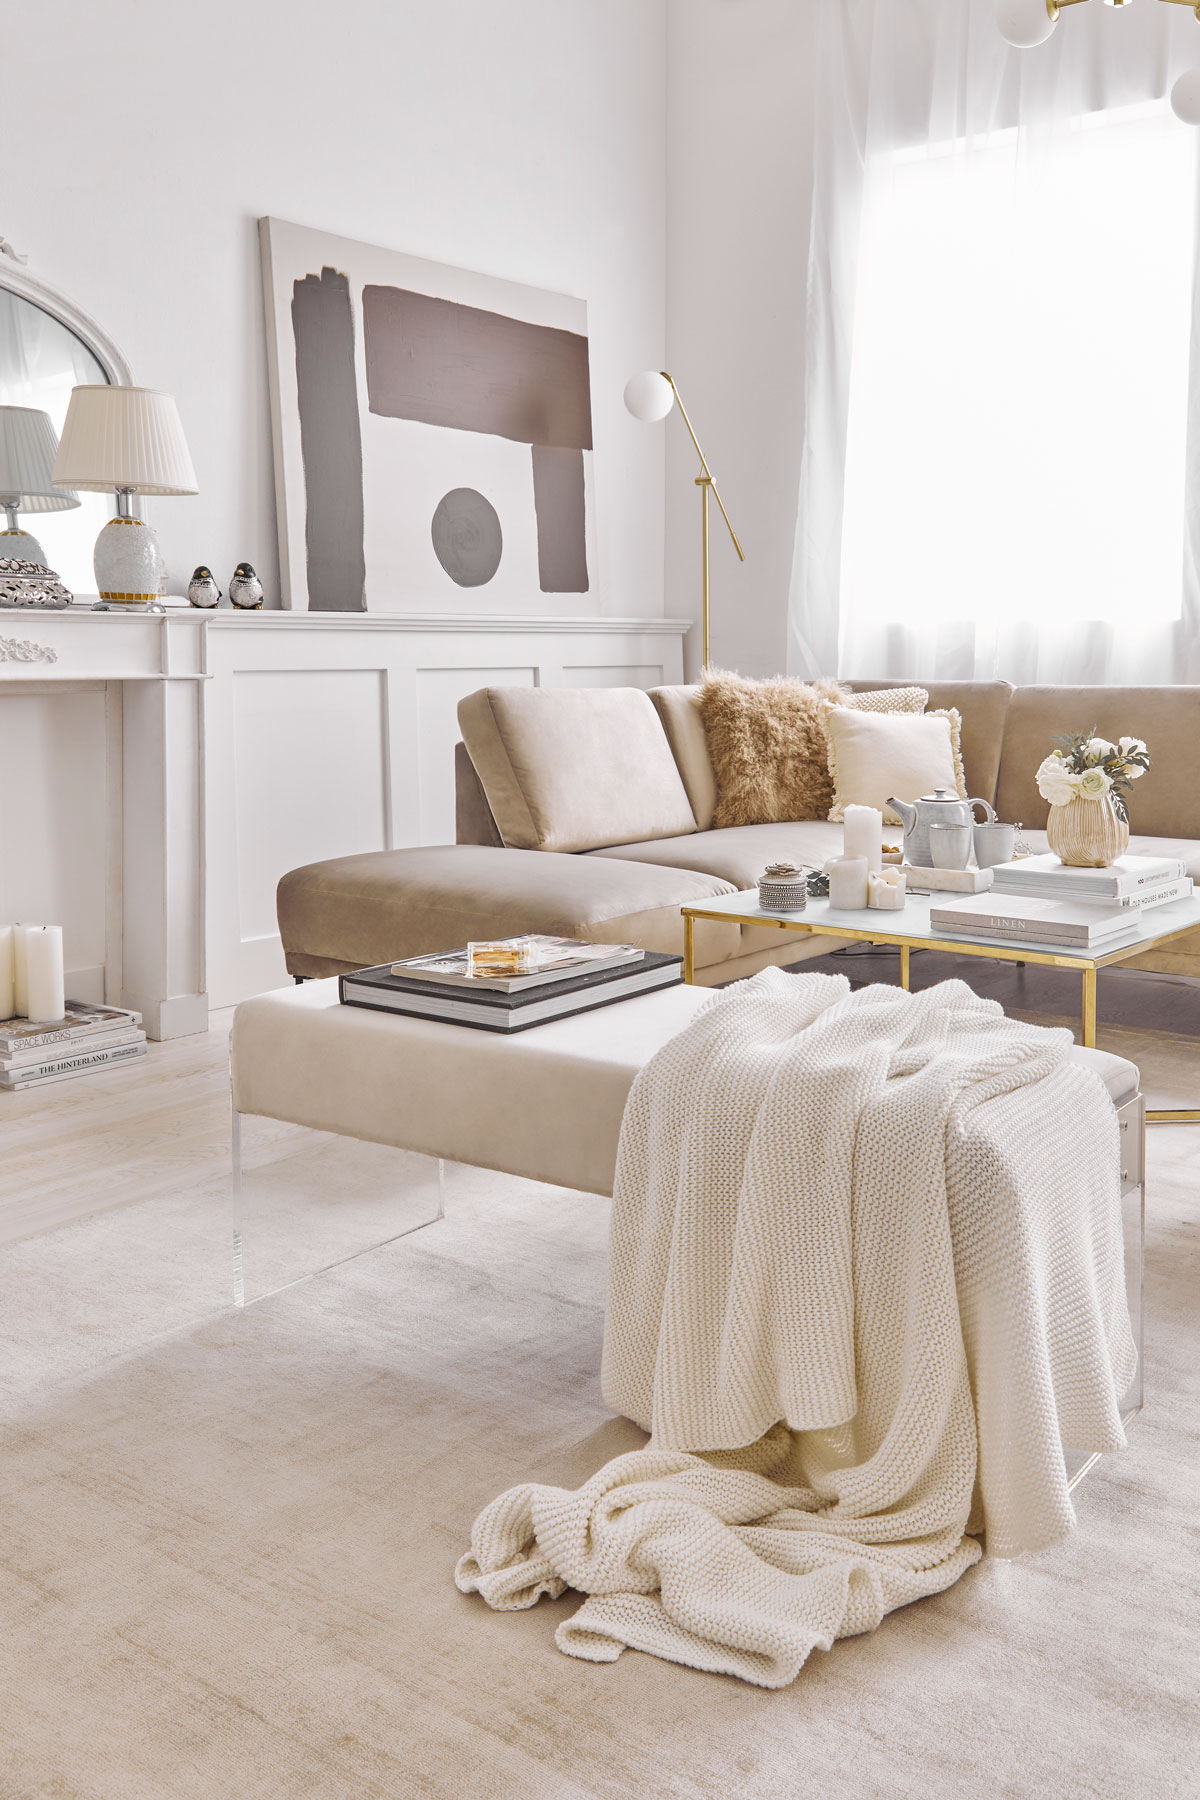 obývačka v parížskom štýle so svetlým nábytkom v kombinácii bielej a kávovej farebnosti